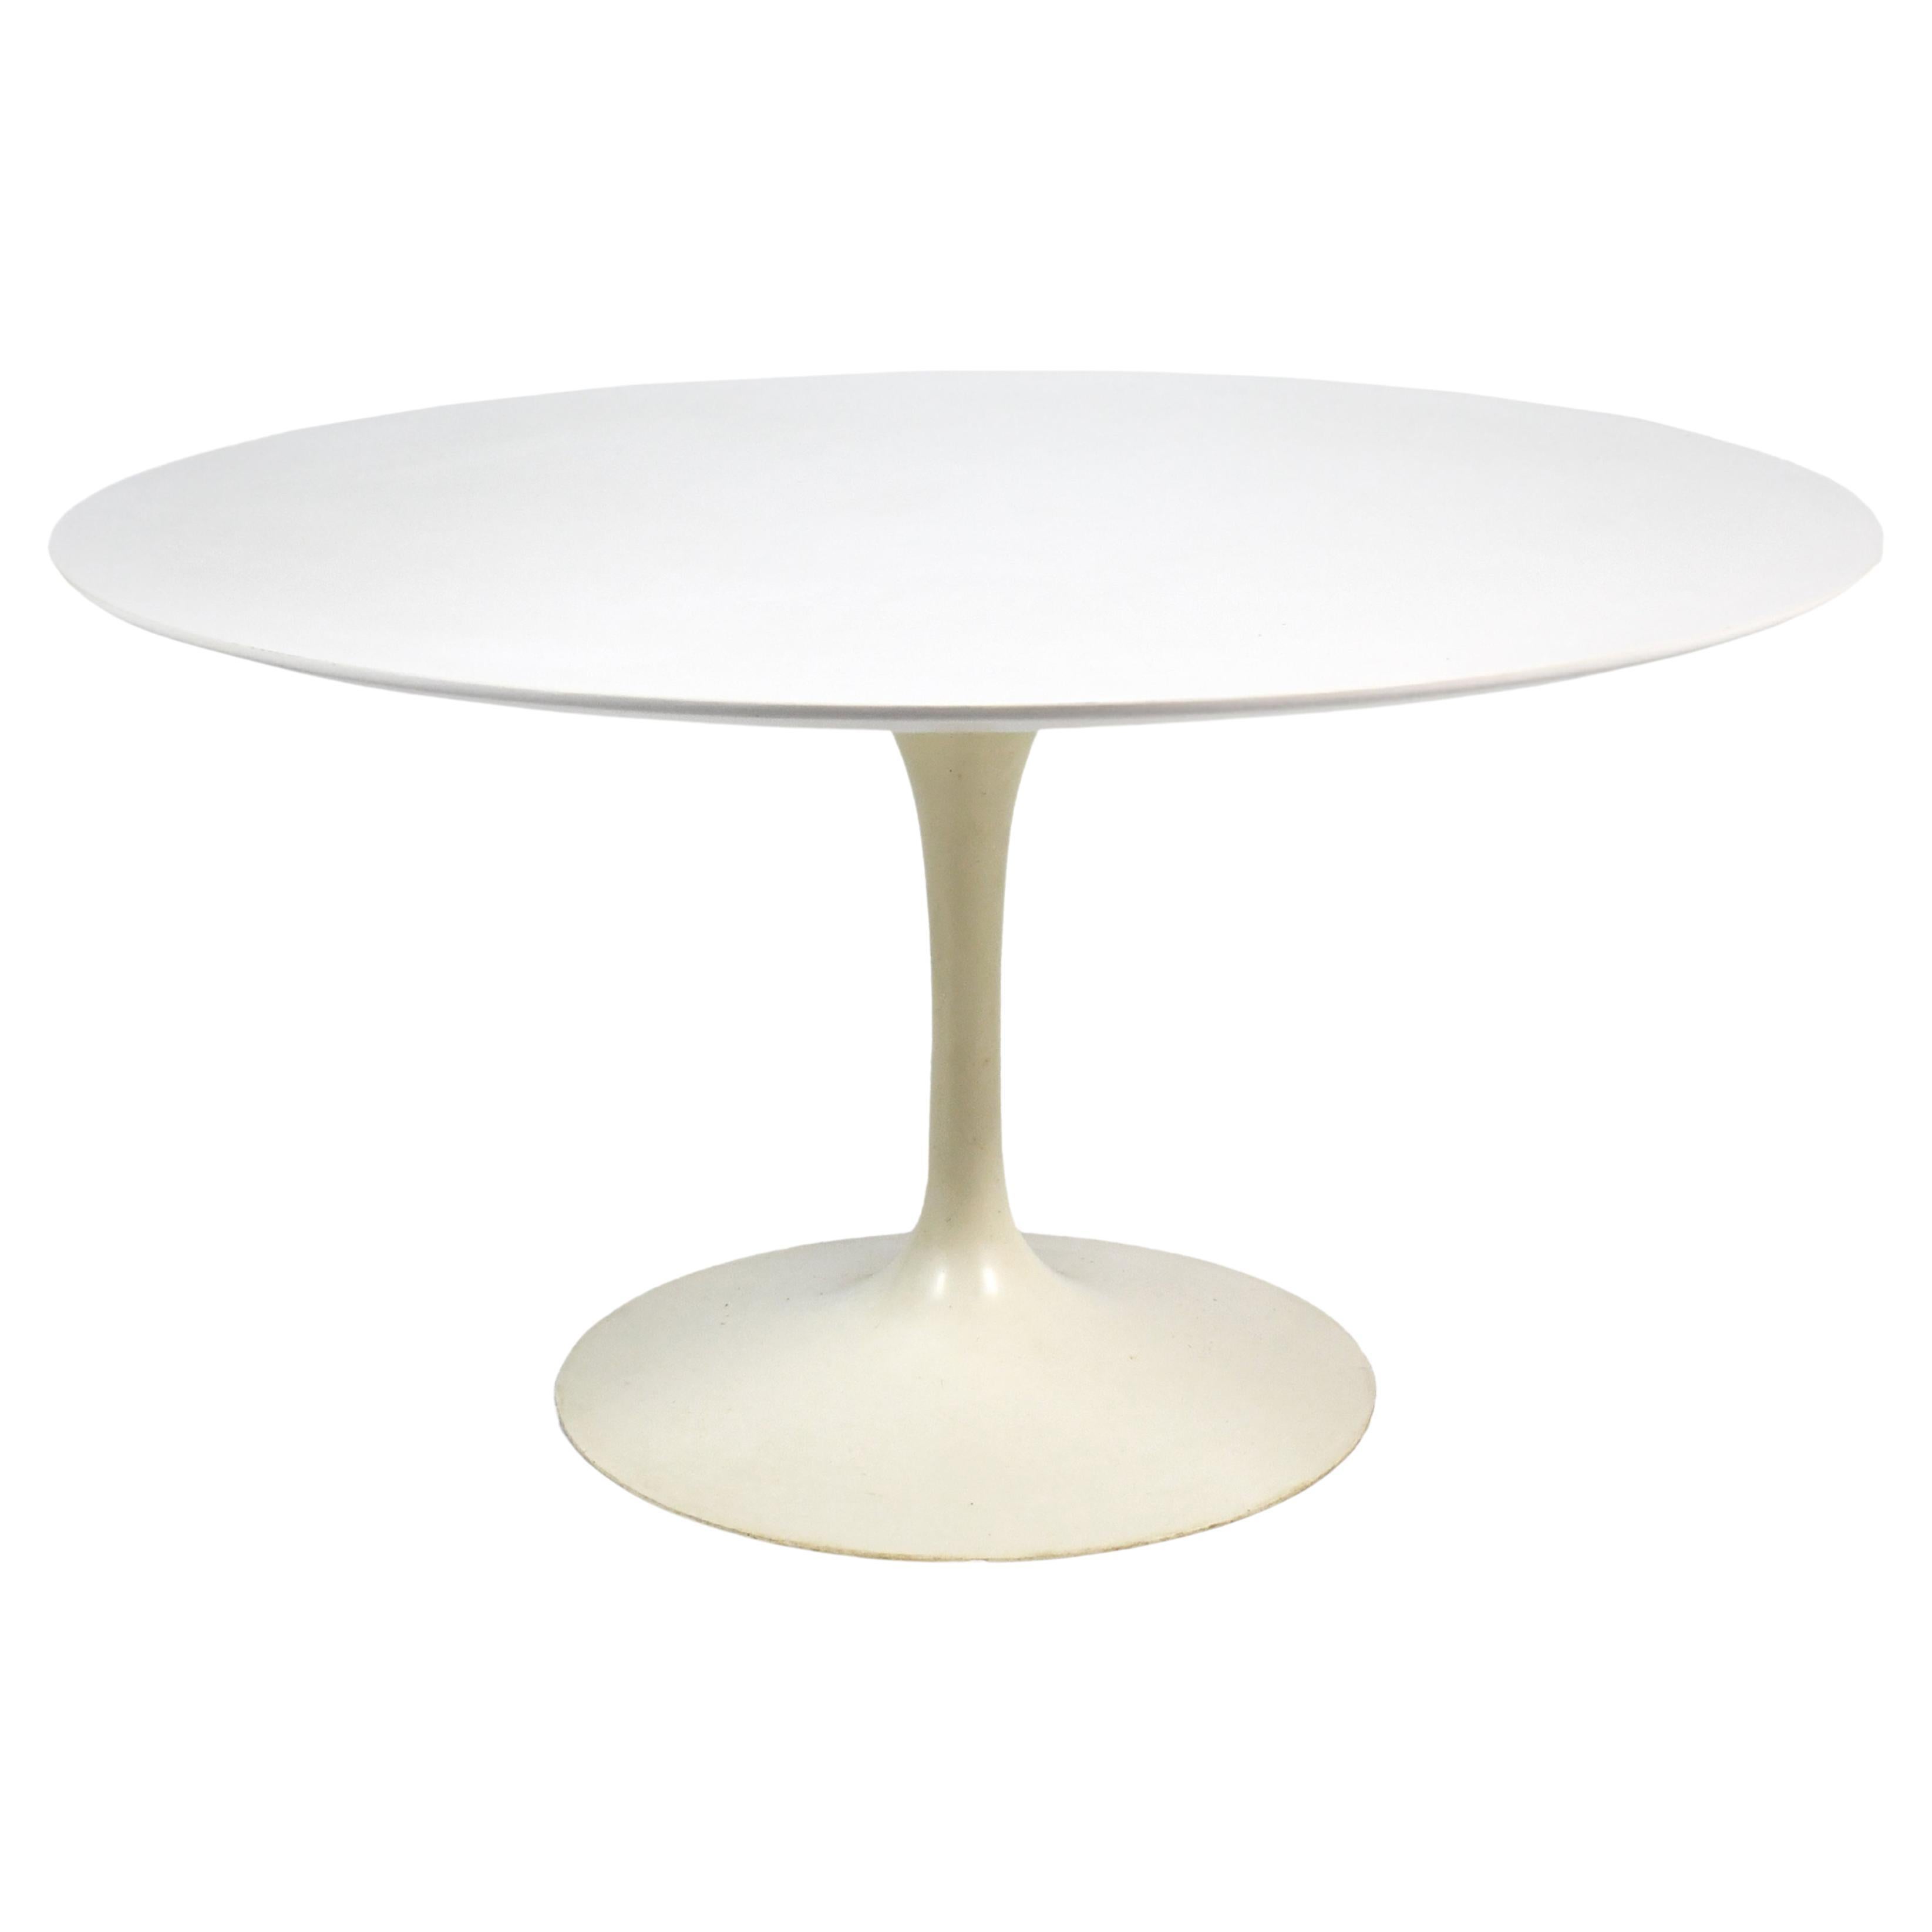 Eero Saarinen Tulip Dining Table by Knoll